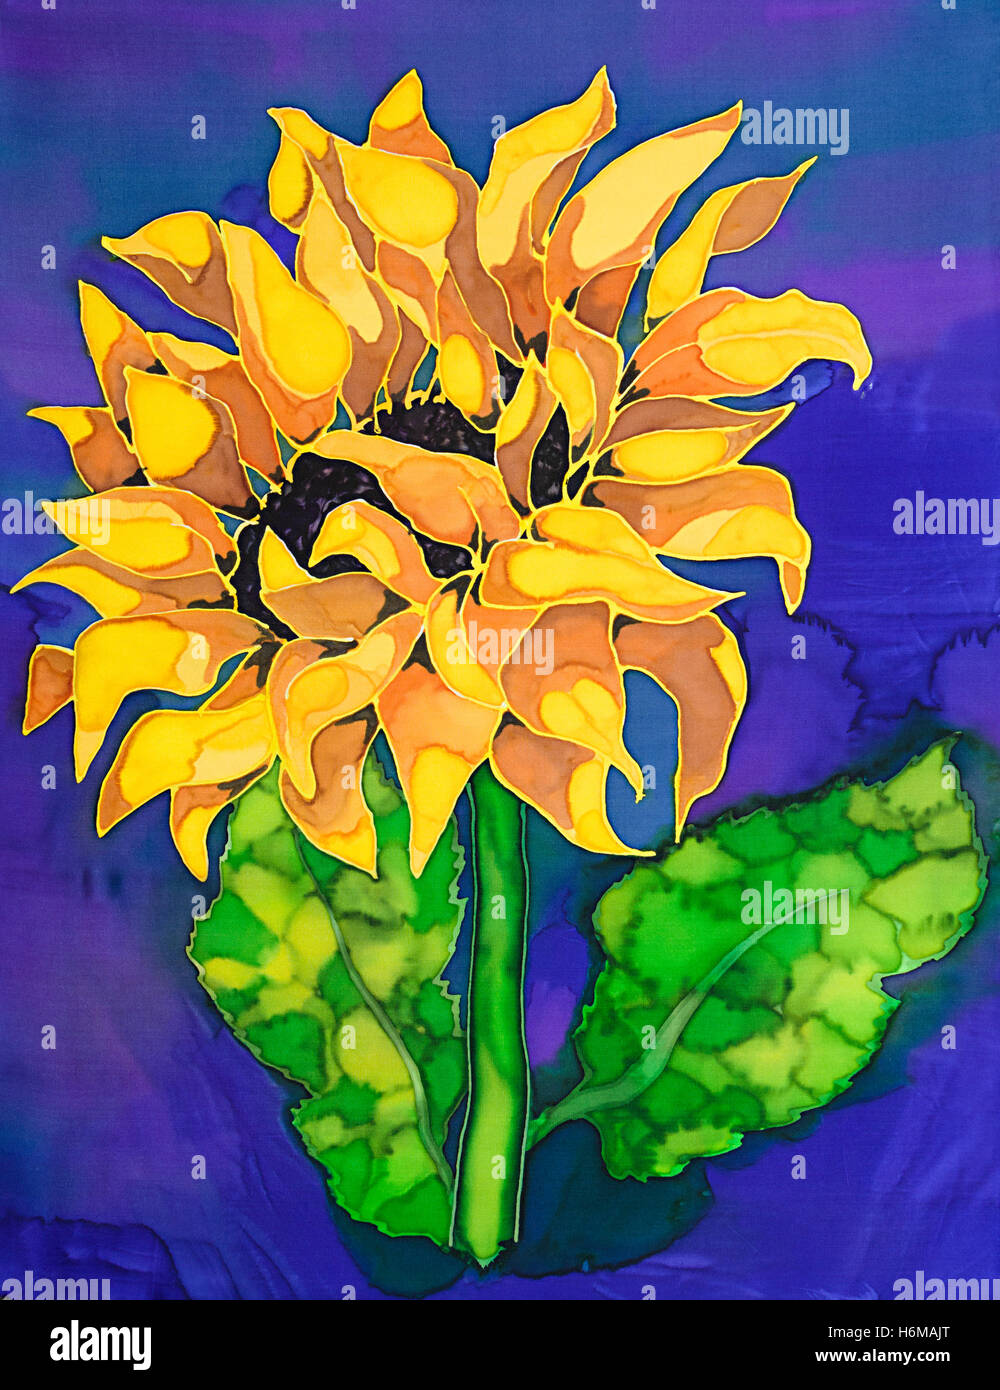 Fotografieren von Seidenmalerei einer gelben Sonnenblume abgestuften Hintergrund mit Dampf Farbstoffe durch Paula Chapman fixiert. Stockfoto